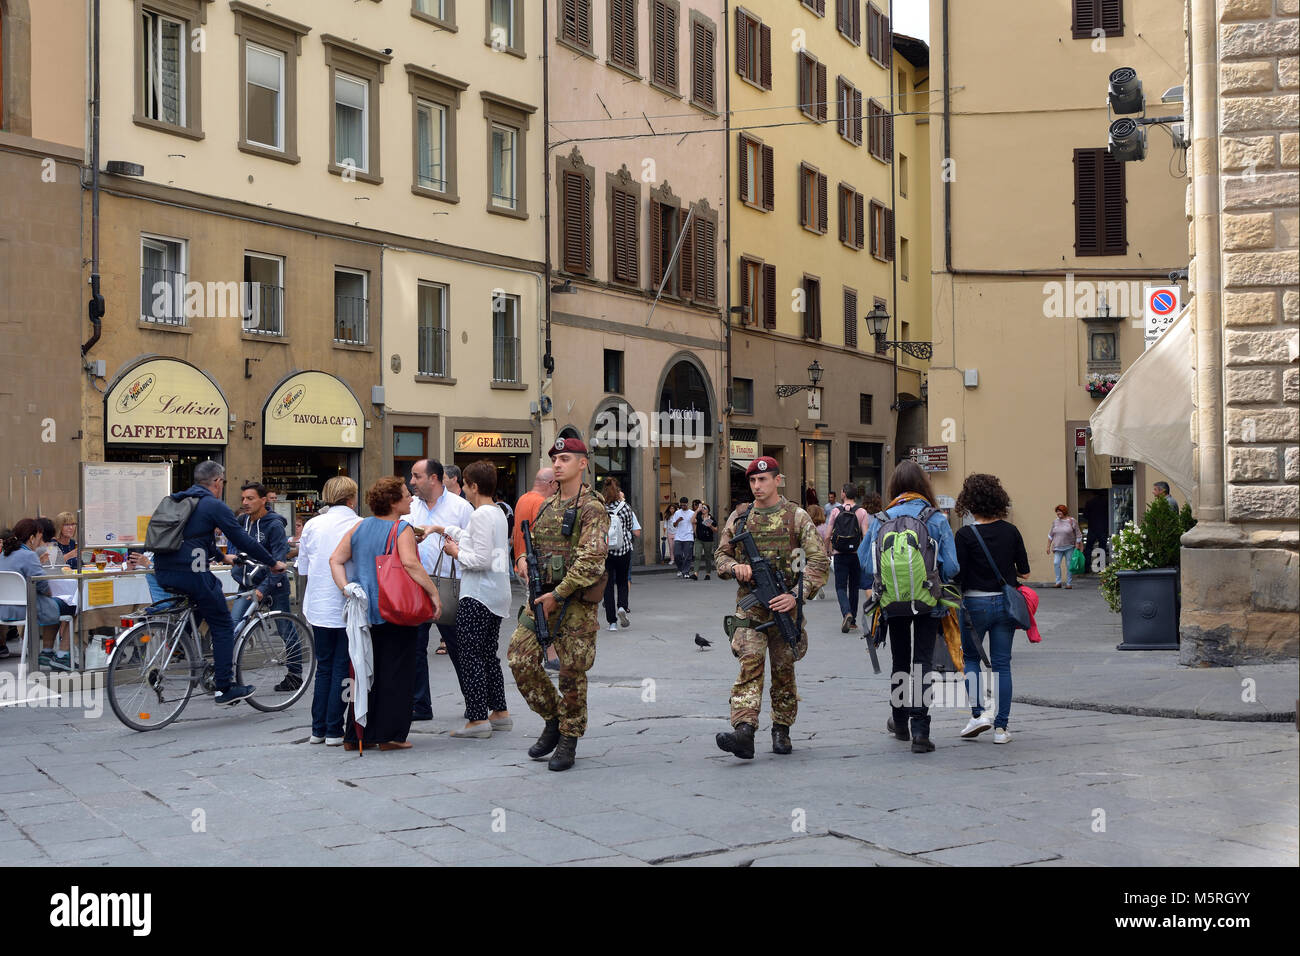 Les patrouilles militaires armés dans la vieille ville historique de Florence, près de Cathédrale de Santa Maria del Fiore - Italie. Banque D'Images